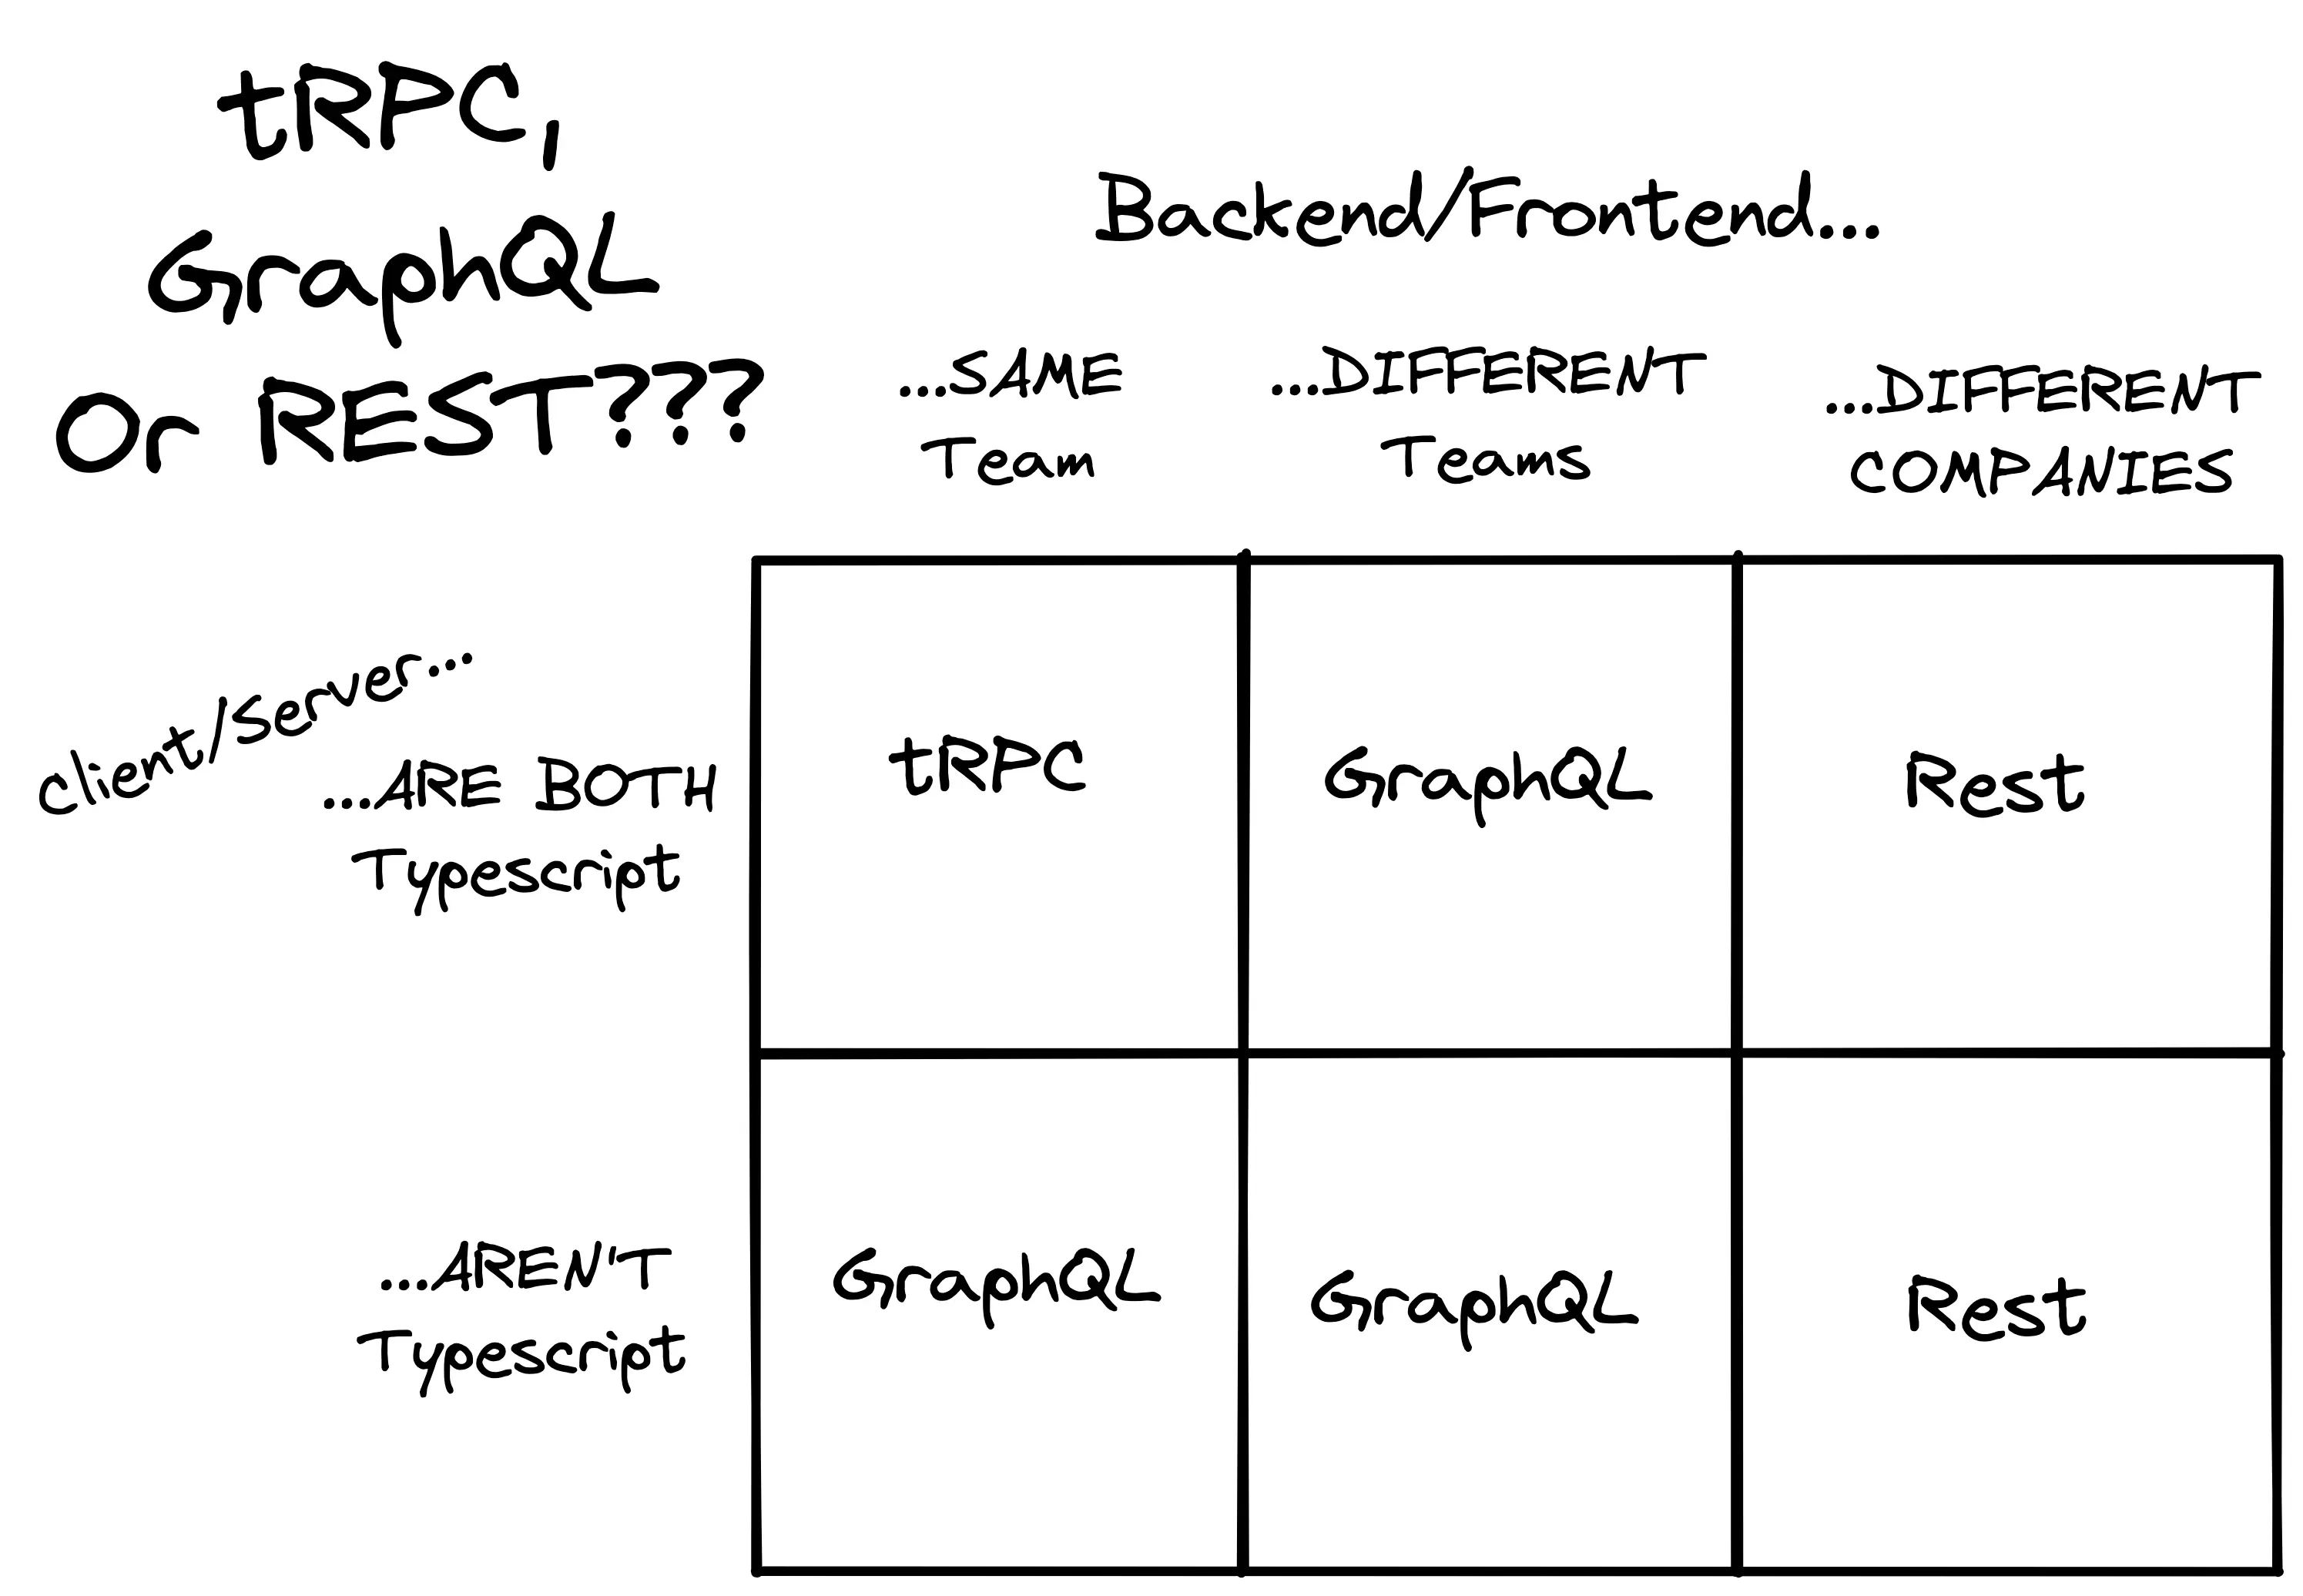 tRPC, graphQL, REST API comparison